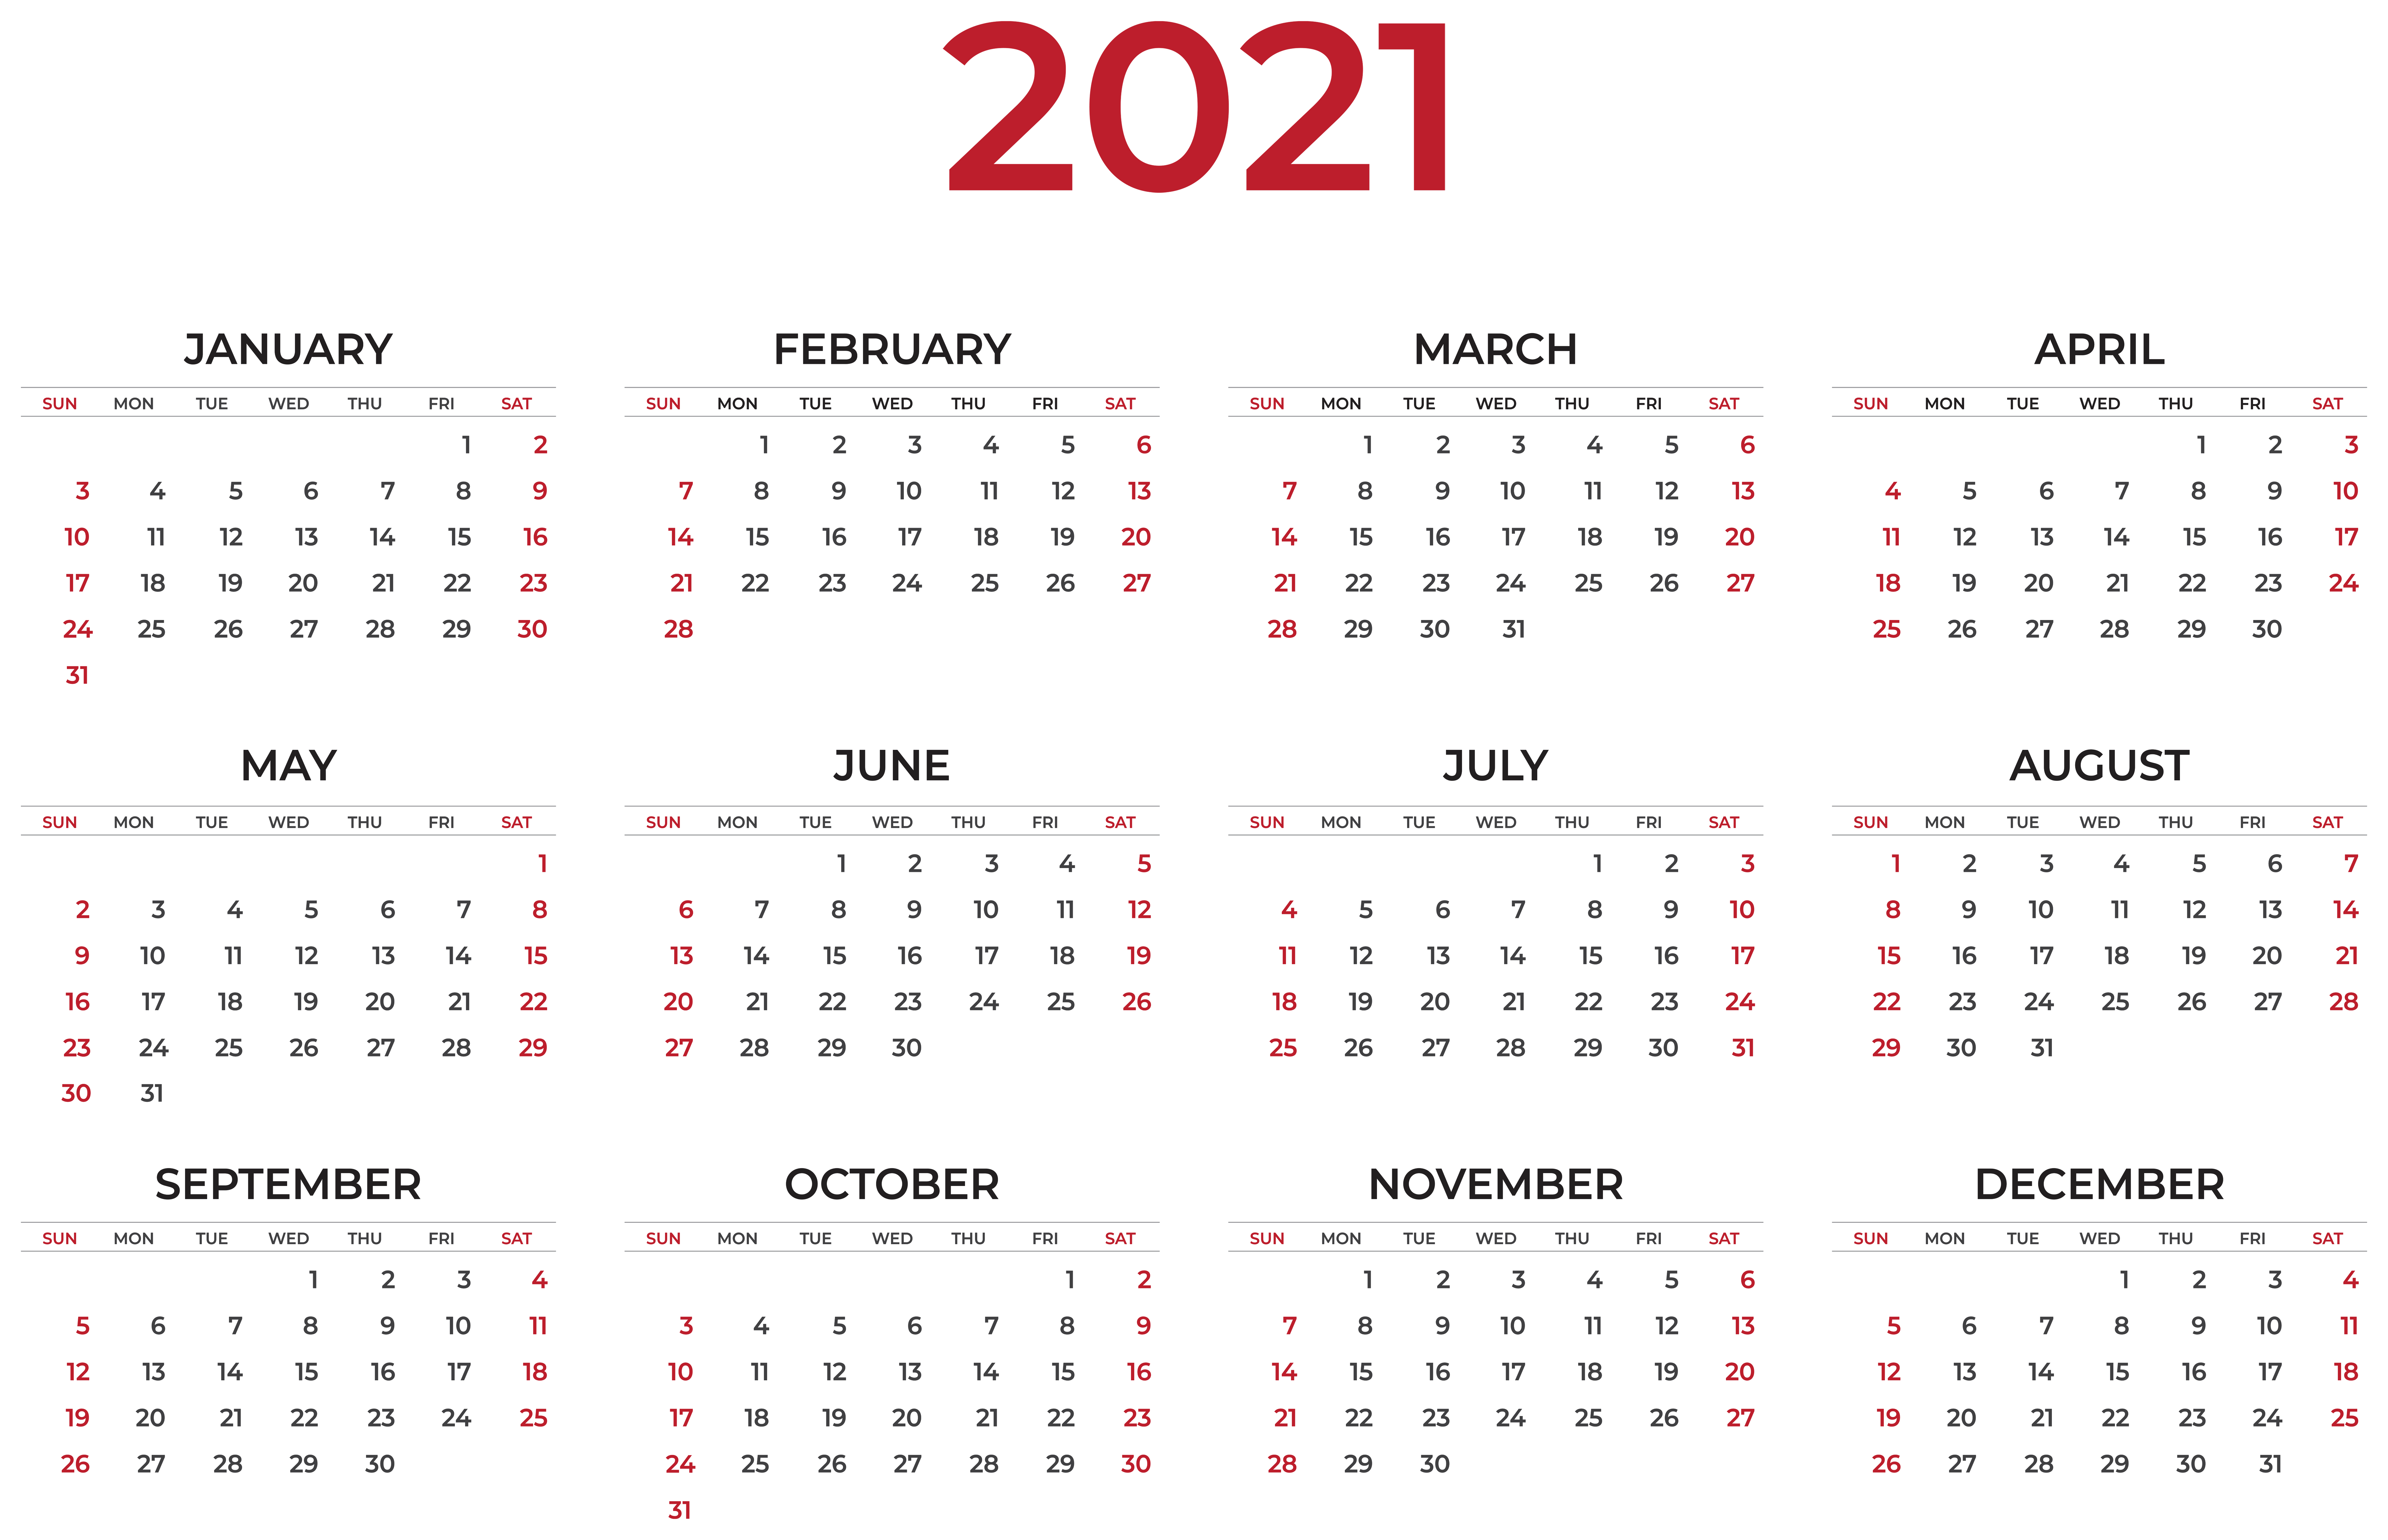 Calendar Wallpaper Free 2021 Calendar Background